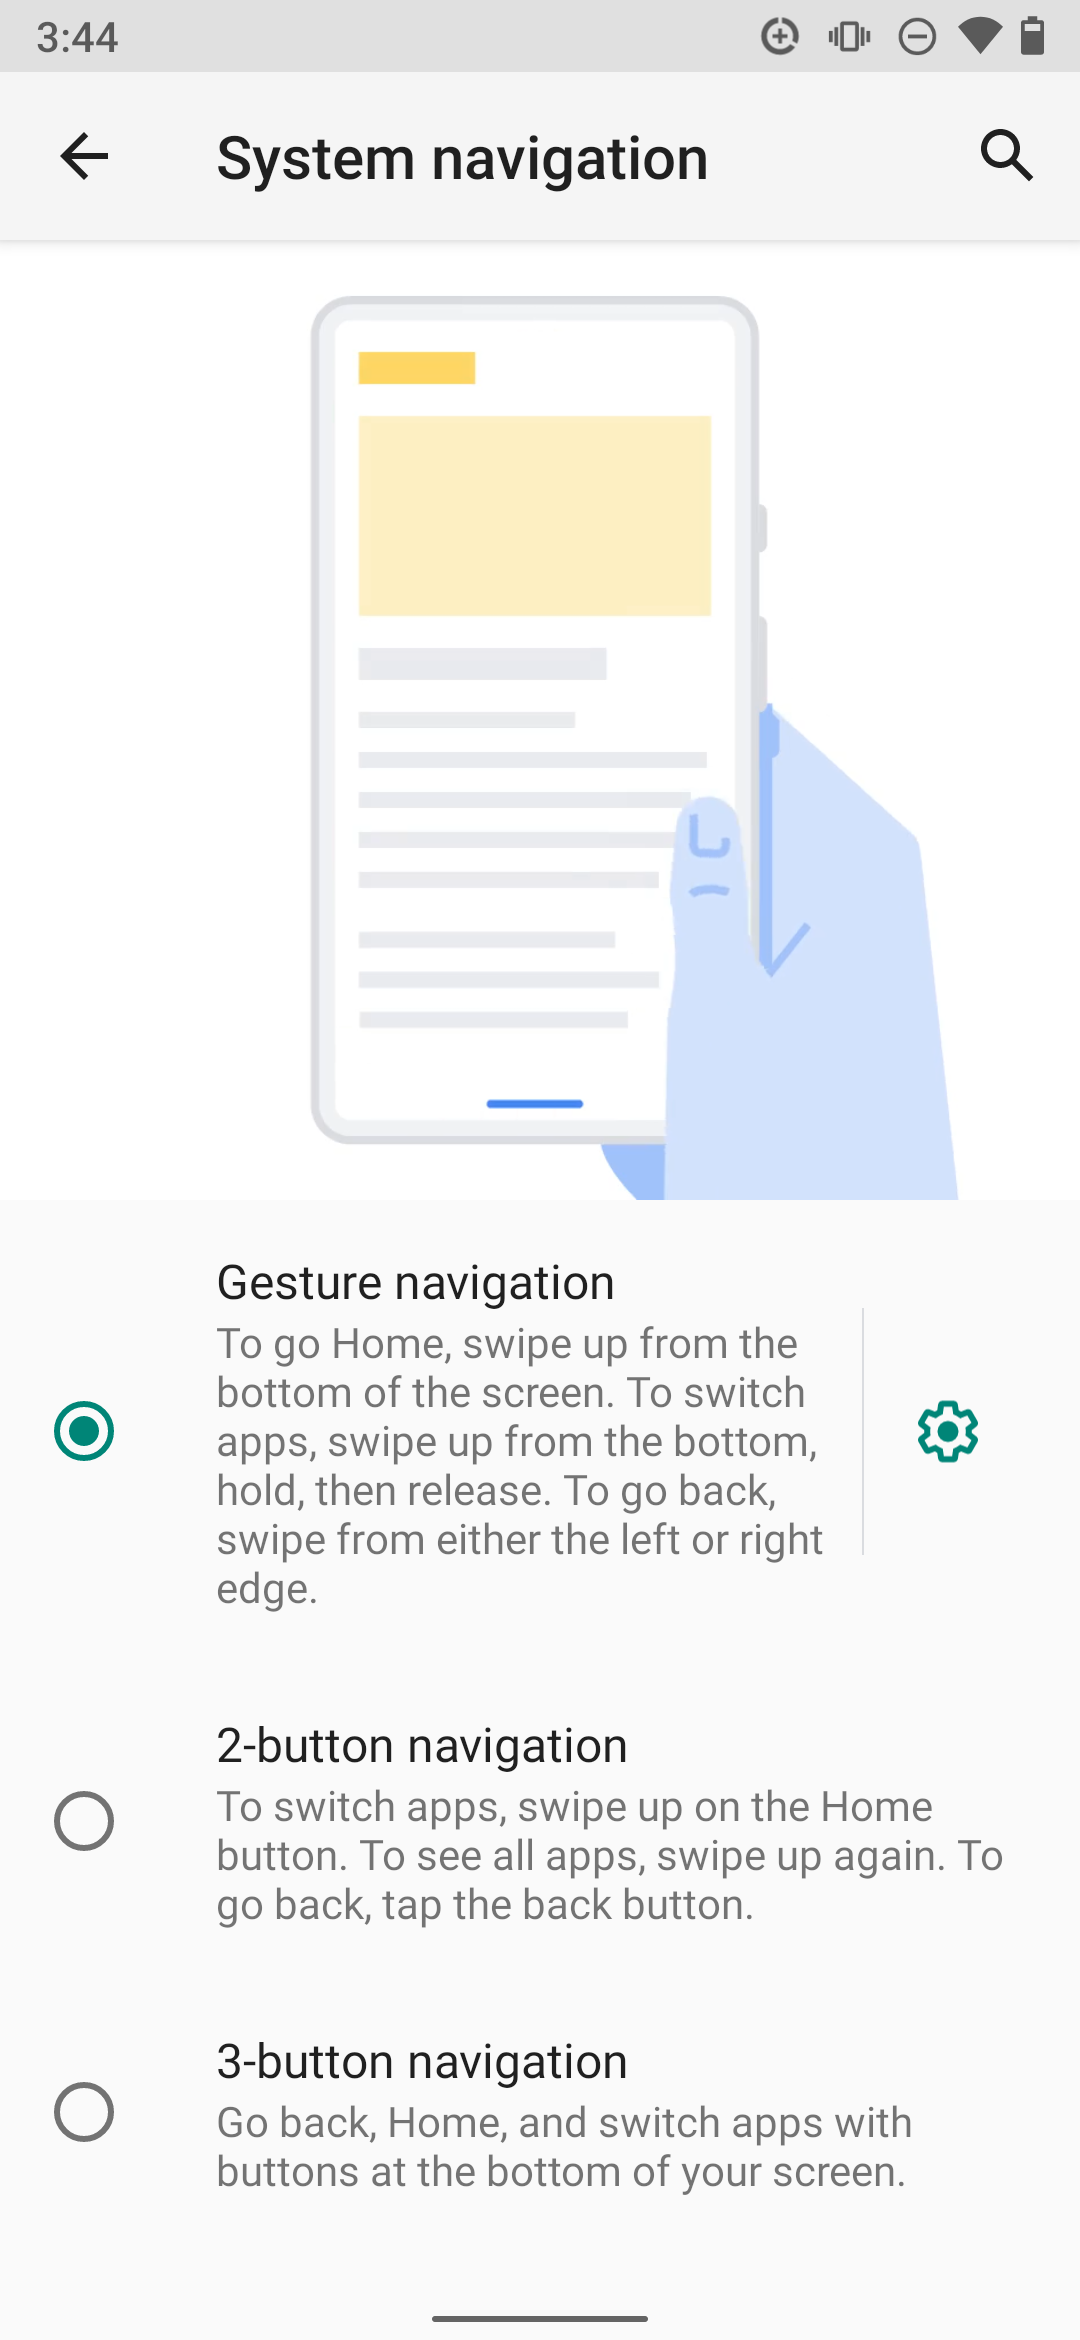 gesture navigation removes the navigation bar